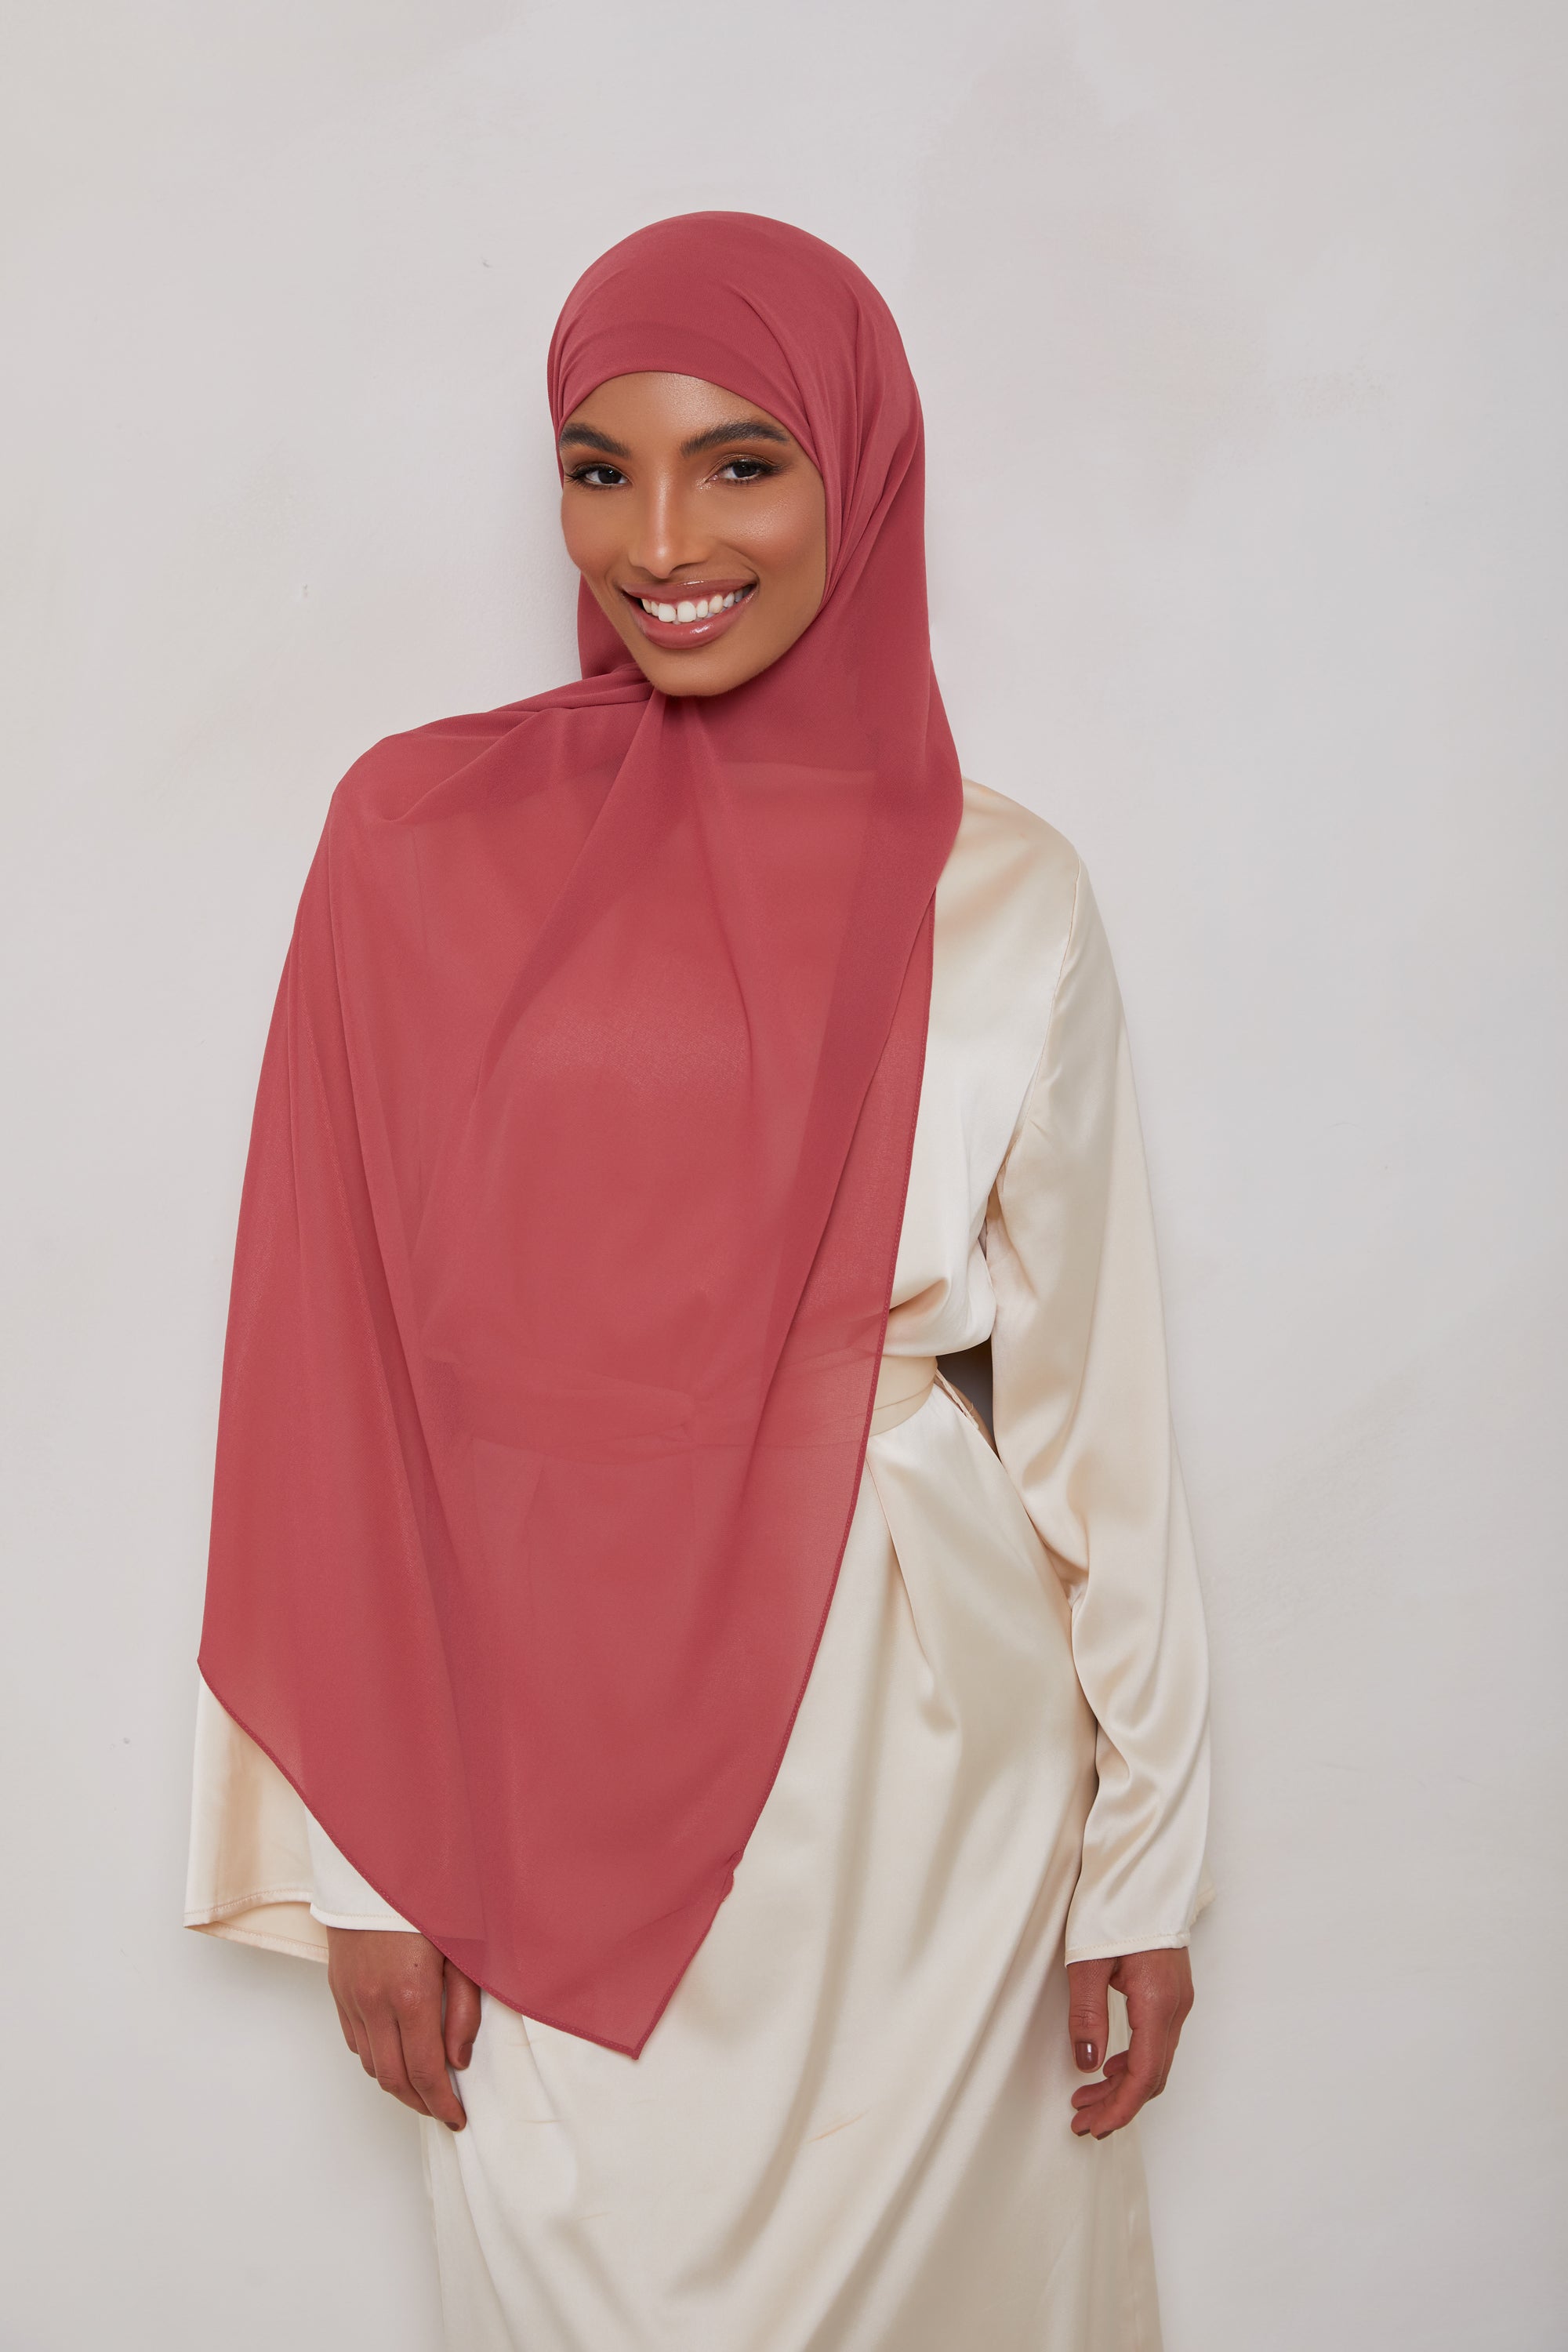 Essential Chiffon Hijab - Warm Rose epschoolboard 